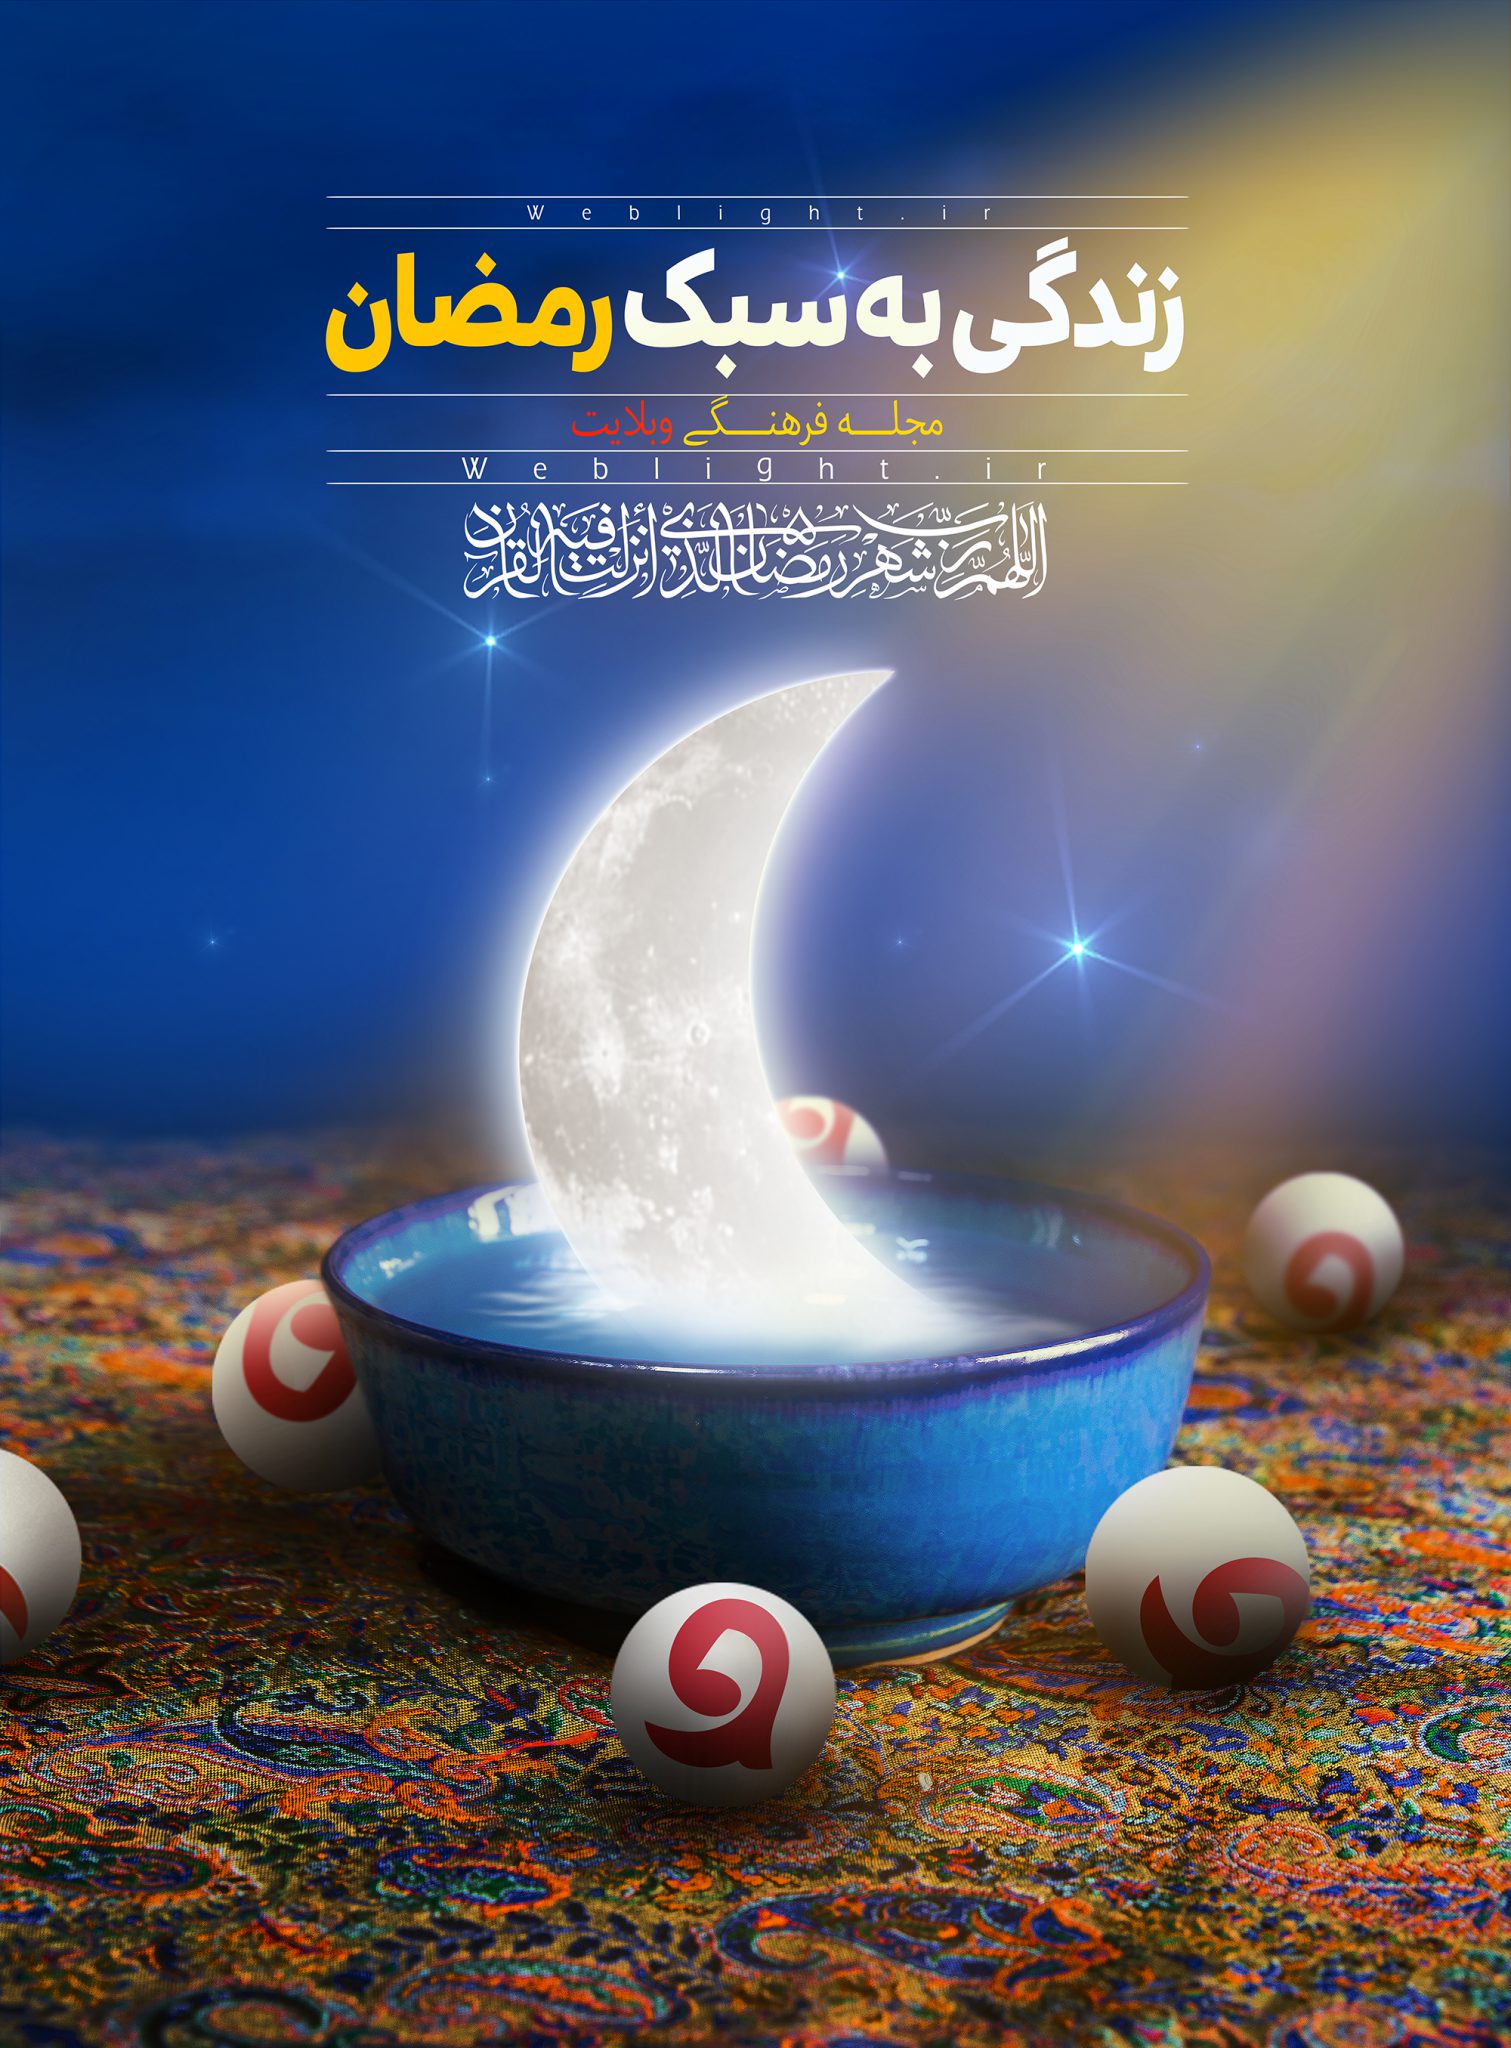 پوستر ویژه وبلایت به مناسبت حلول ماه مبارک رمضان